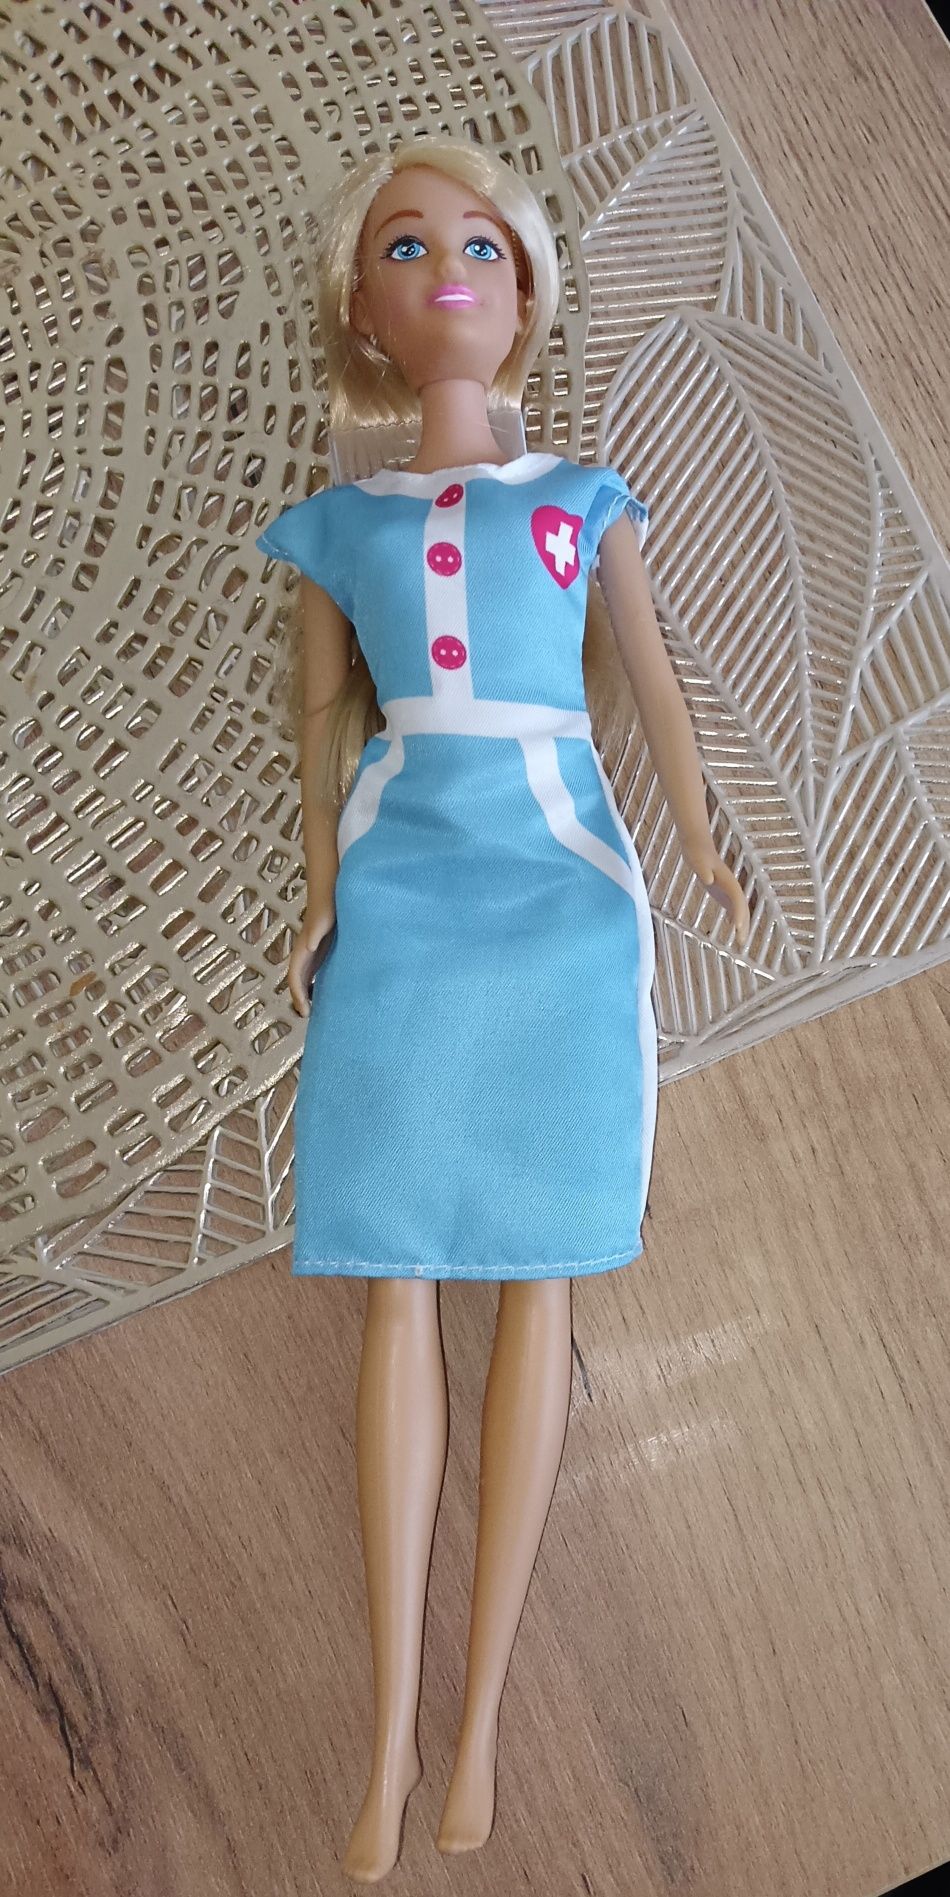 Lalka Barbie Pielęgniarka